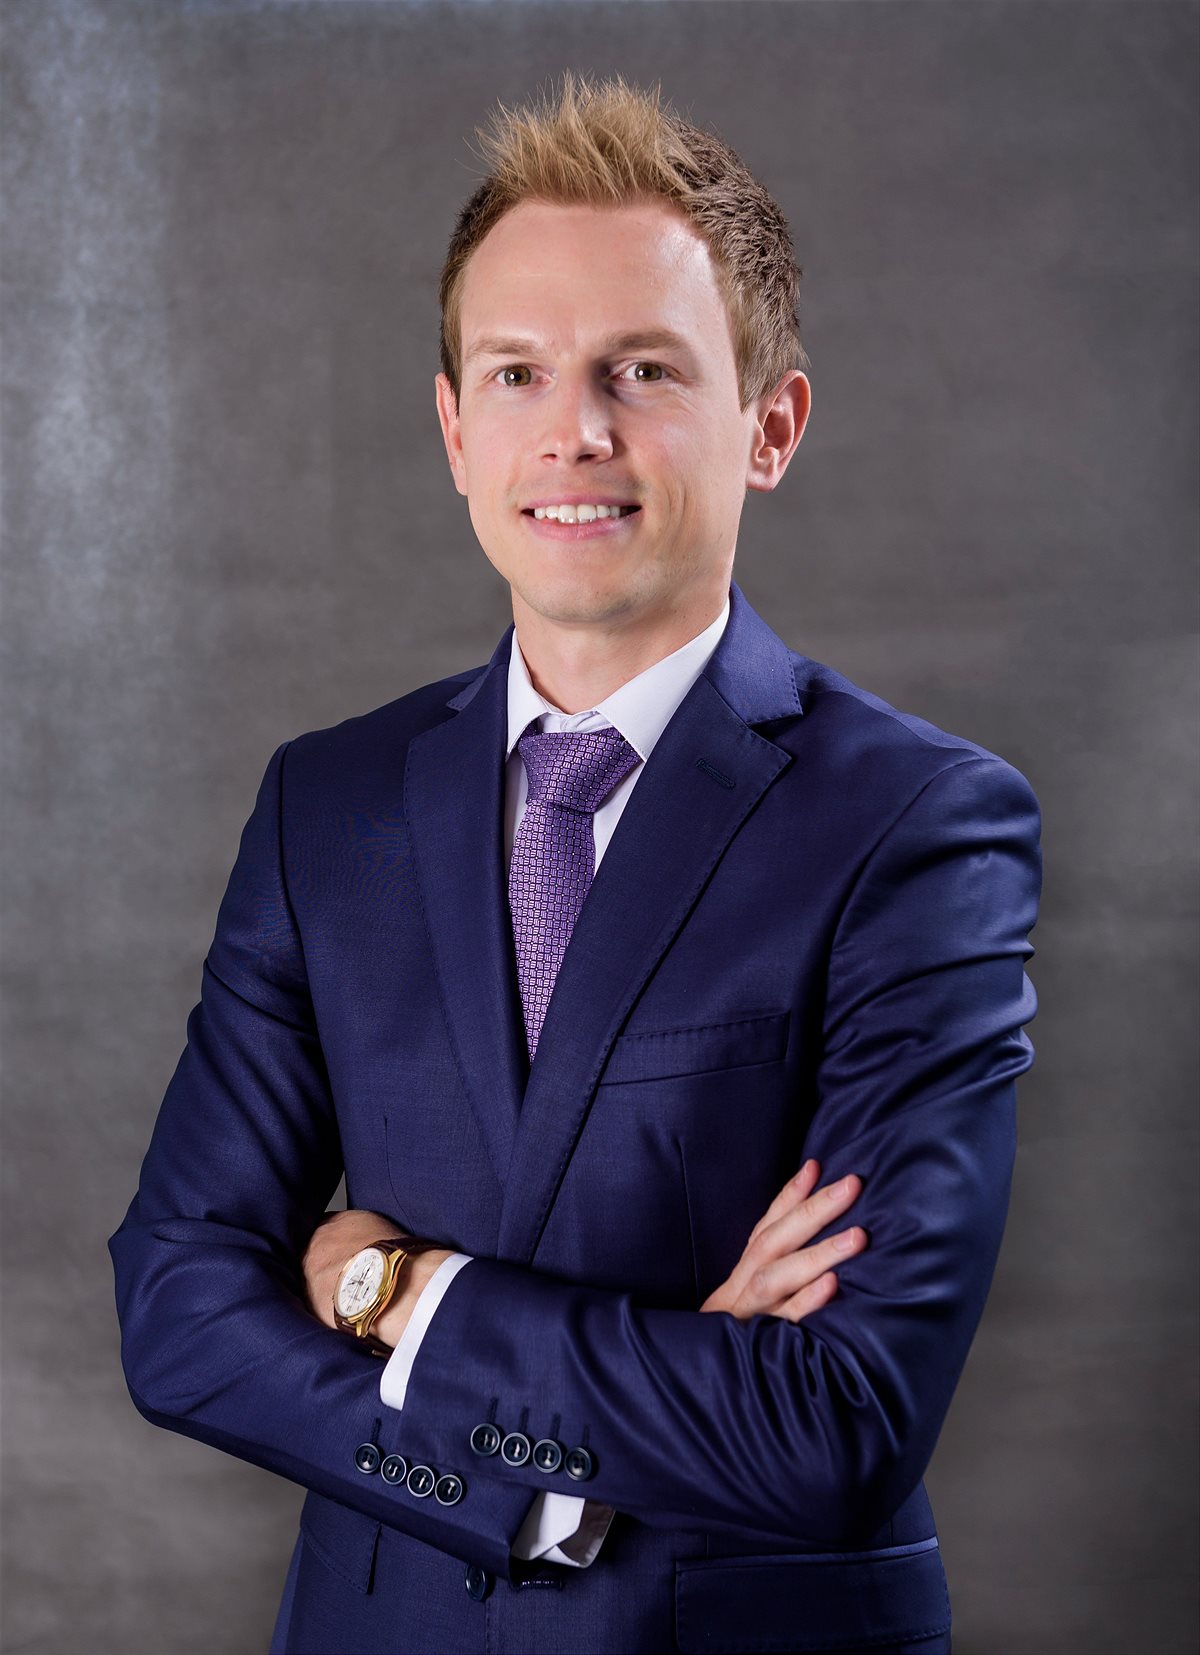 Ivan Drokin neuer Managing Director bei LUKOIL Lubricants Europe